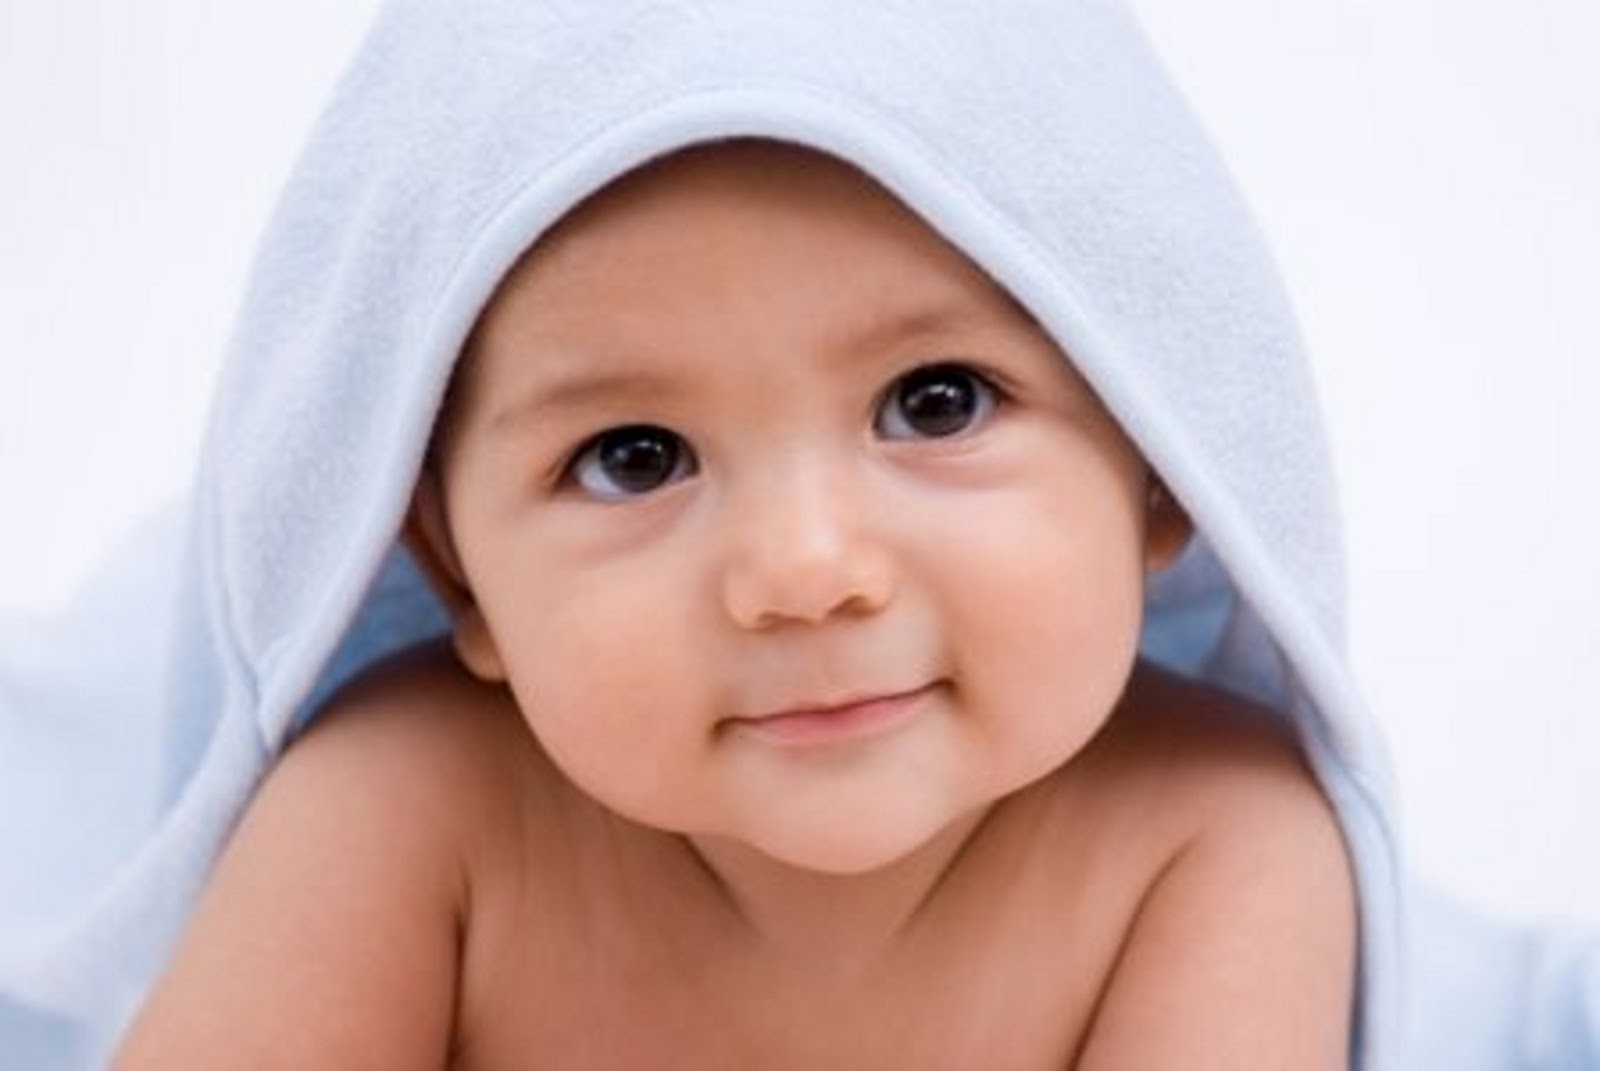 Gambar Anak Bayi Lucu Com Terbaru Display Picture Lucu